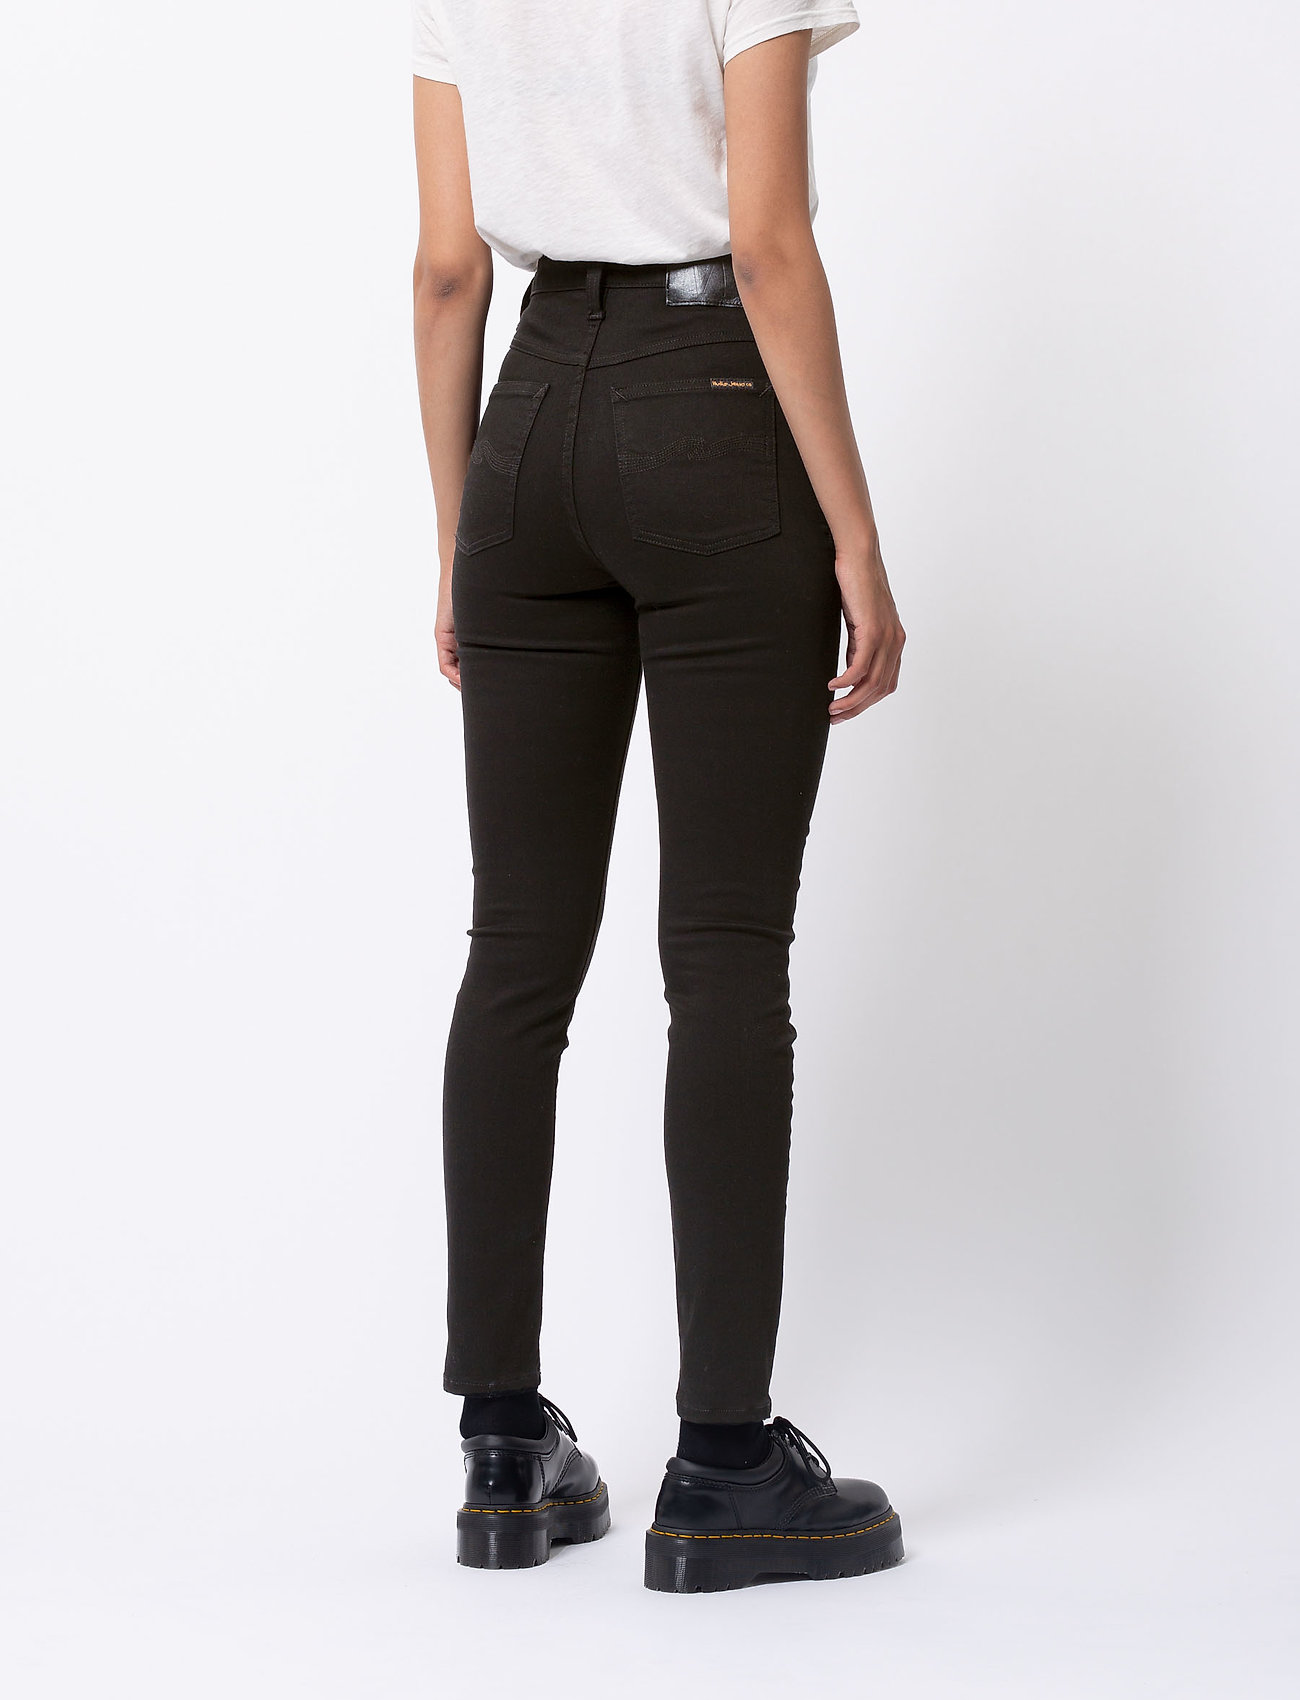 Nudie Jeans - Hightop Tilde - slim fit jeans - everblack - 3